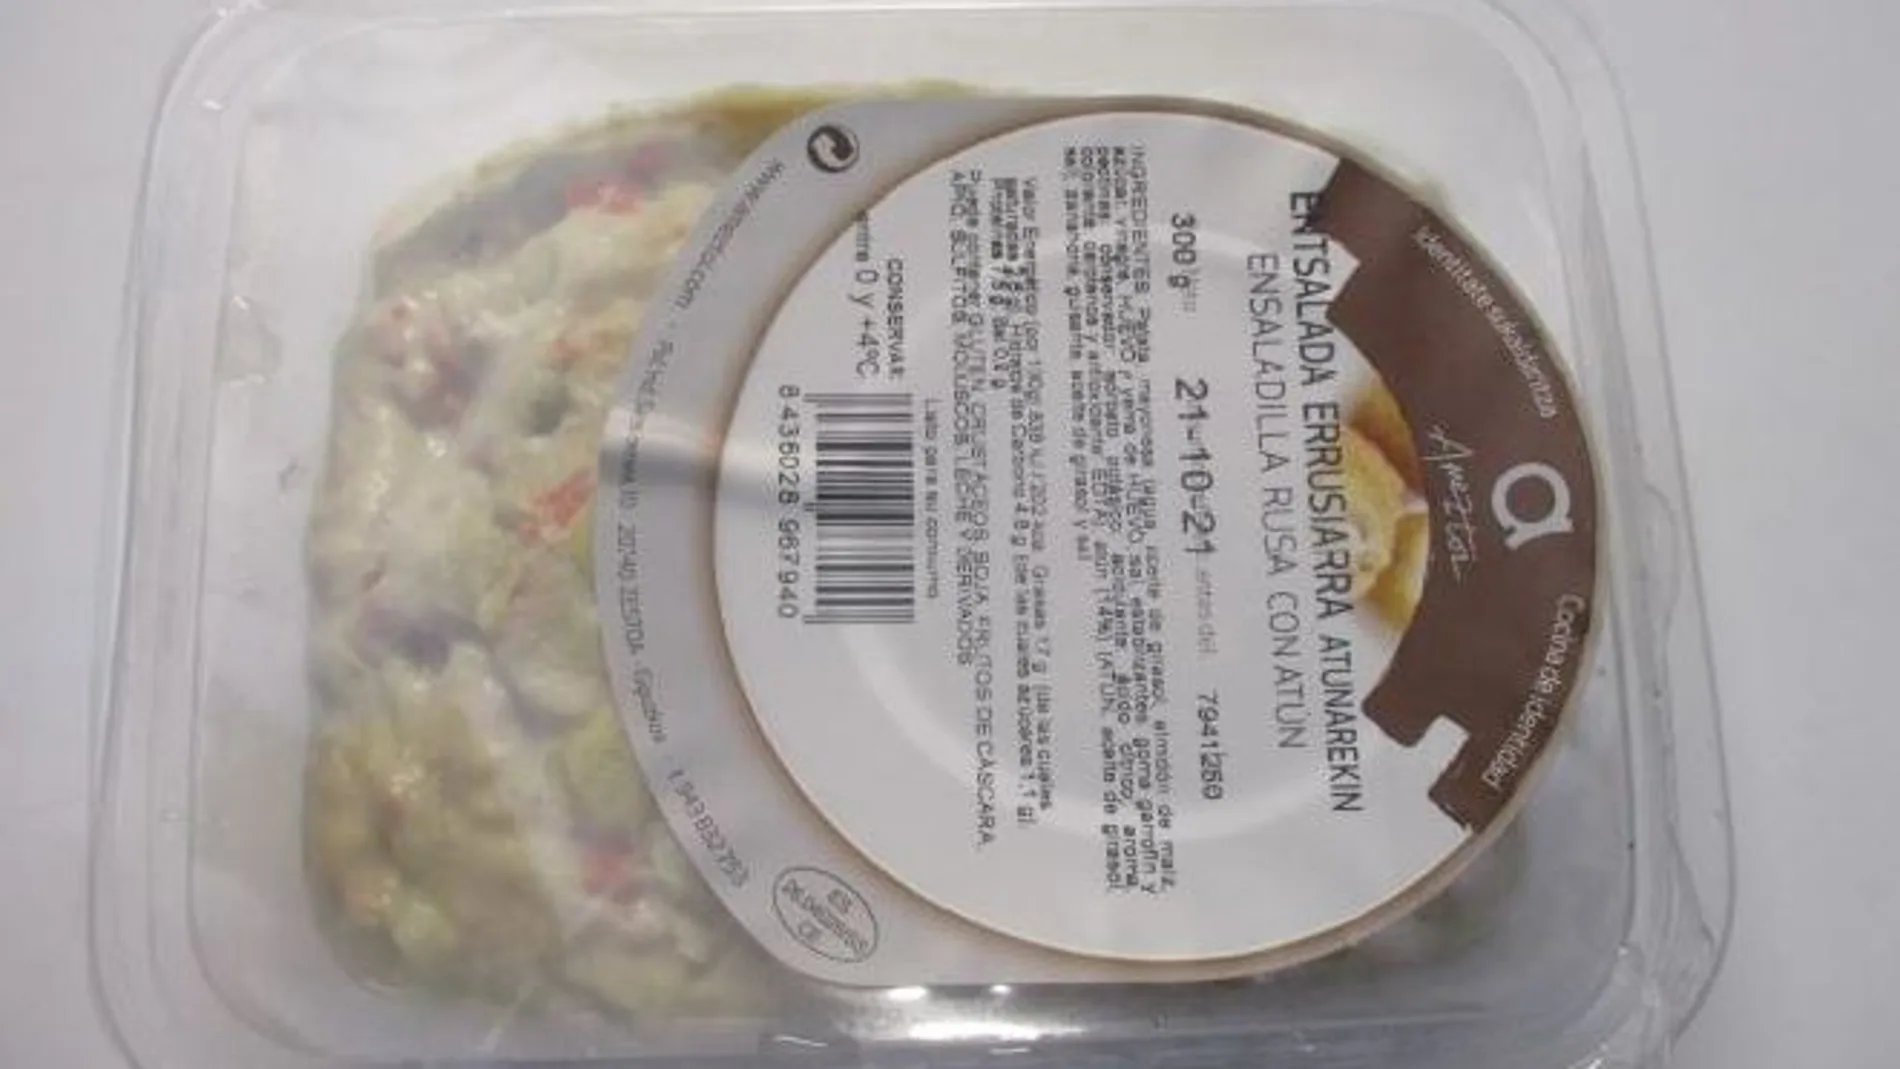 Alerta alimentaria: Retiran del mercado esta ensaladilla rusa envasada